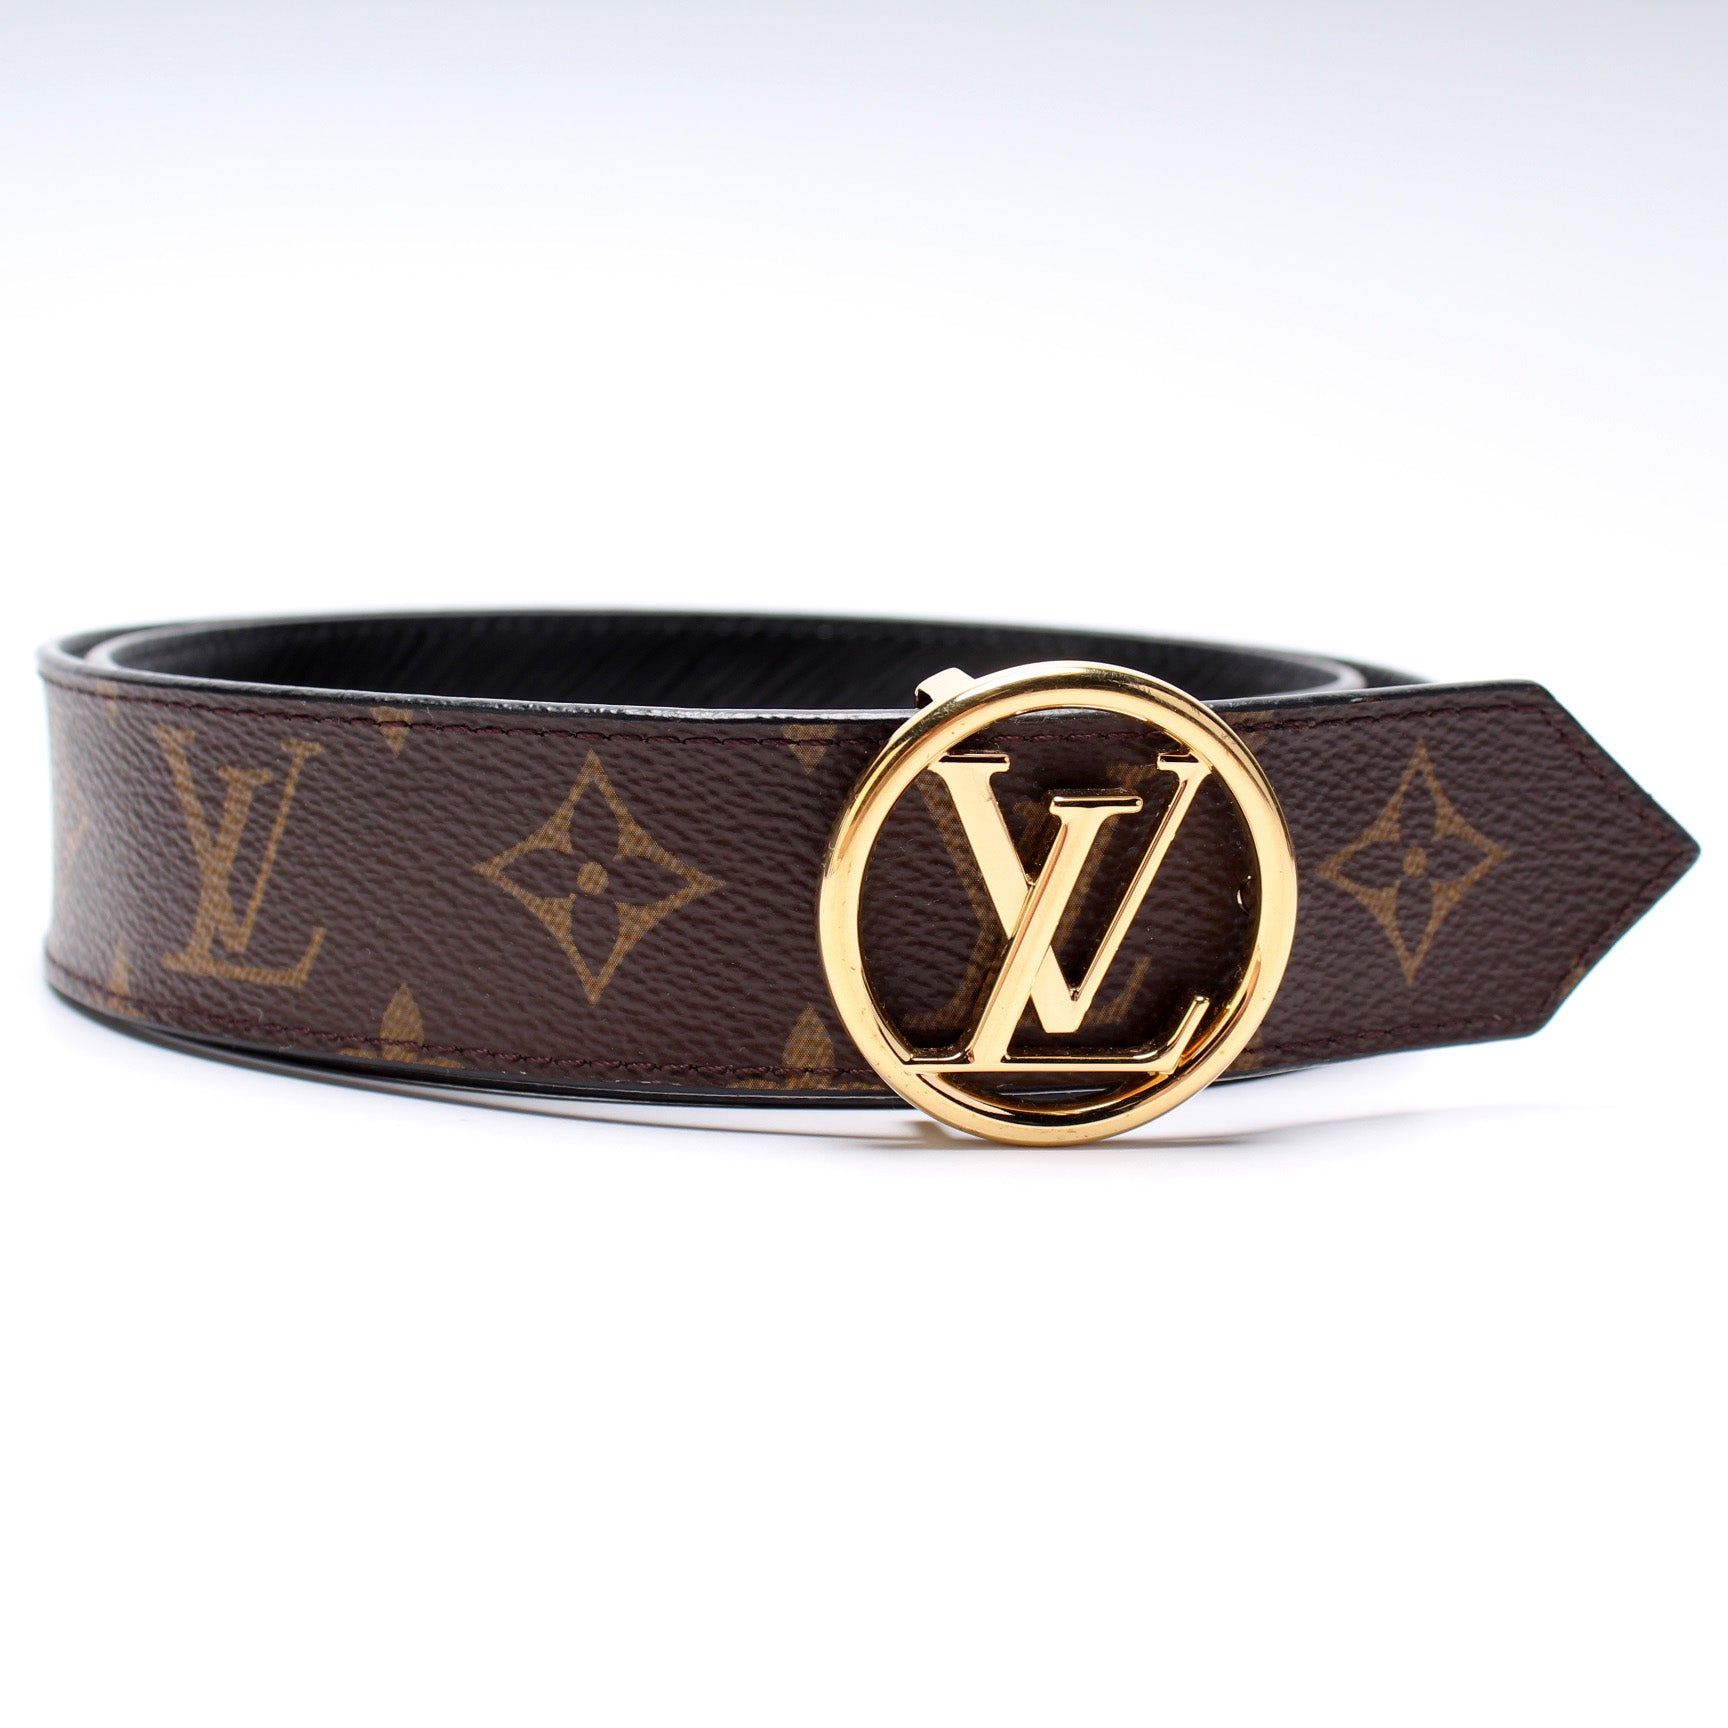 Authentic Louis Vuitton Reversible Monogram LV Buckle Belt Size 80